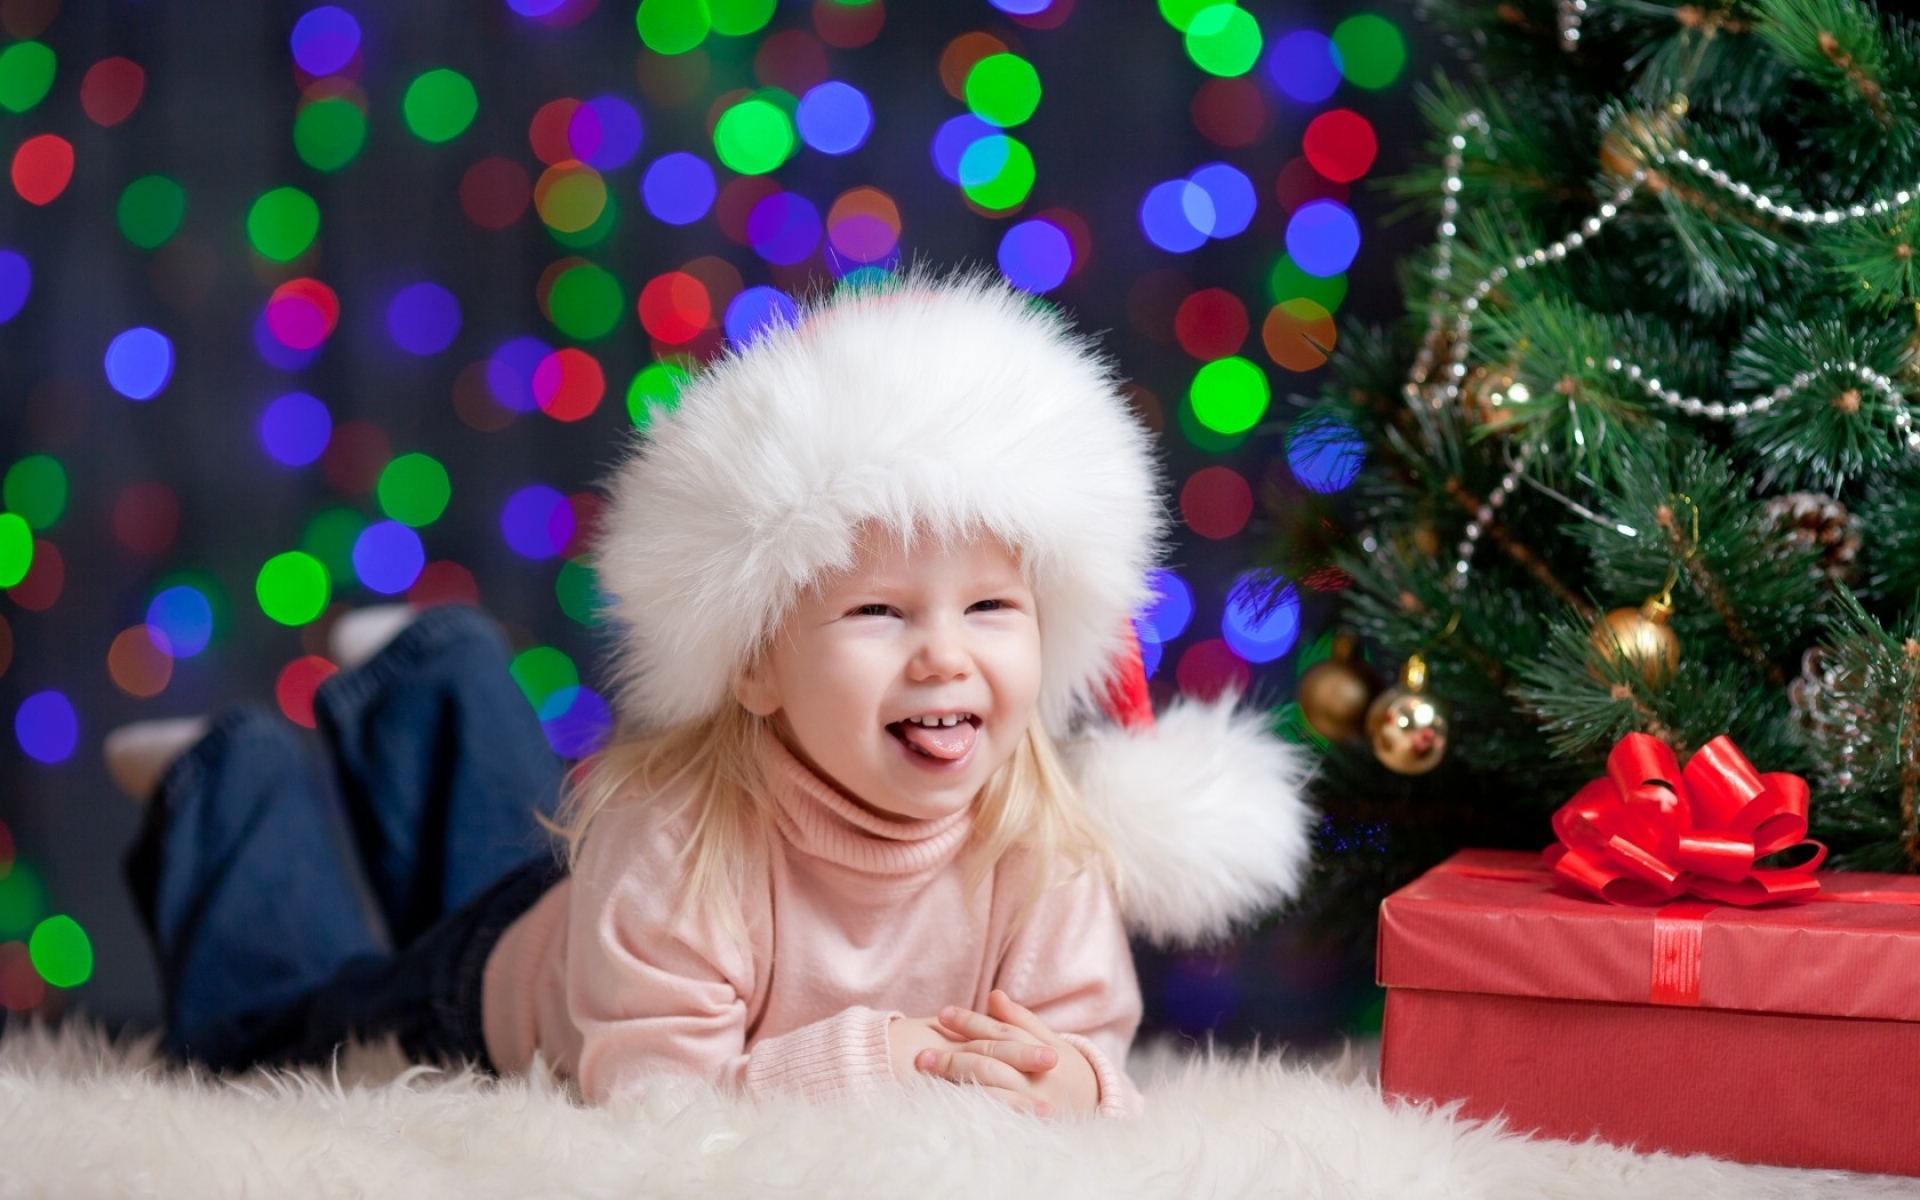 Картинки елка, рождественские украшения, девушка, ребенок, радость, коробка, подарок, шапка, новый год фото и обои на рабочий стол